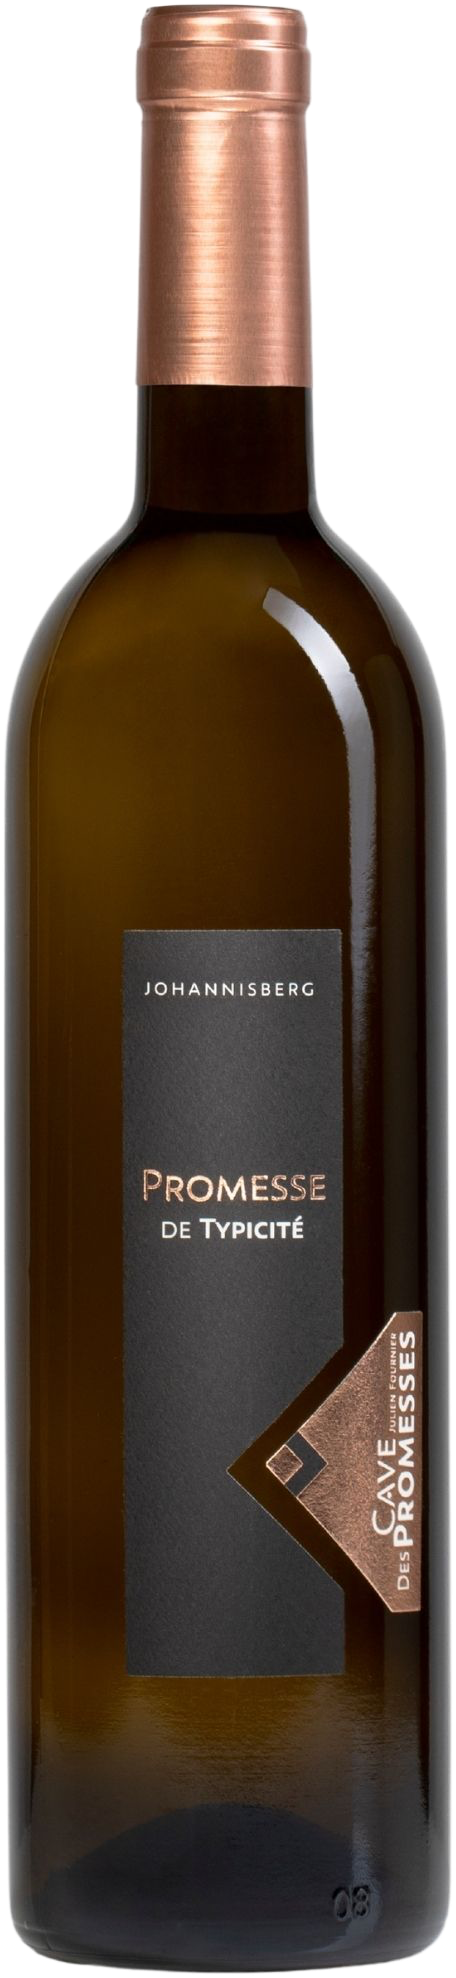 Cave des Promesses - Johannisberg "Promesse de typicité" (2022)